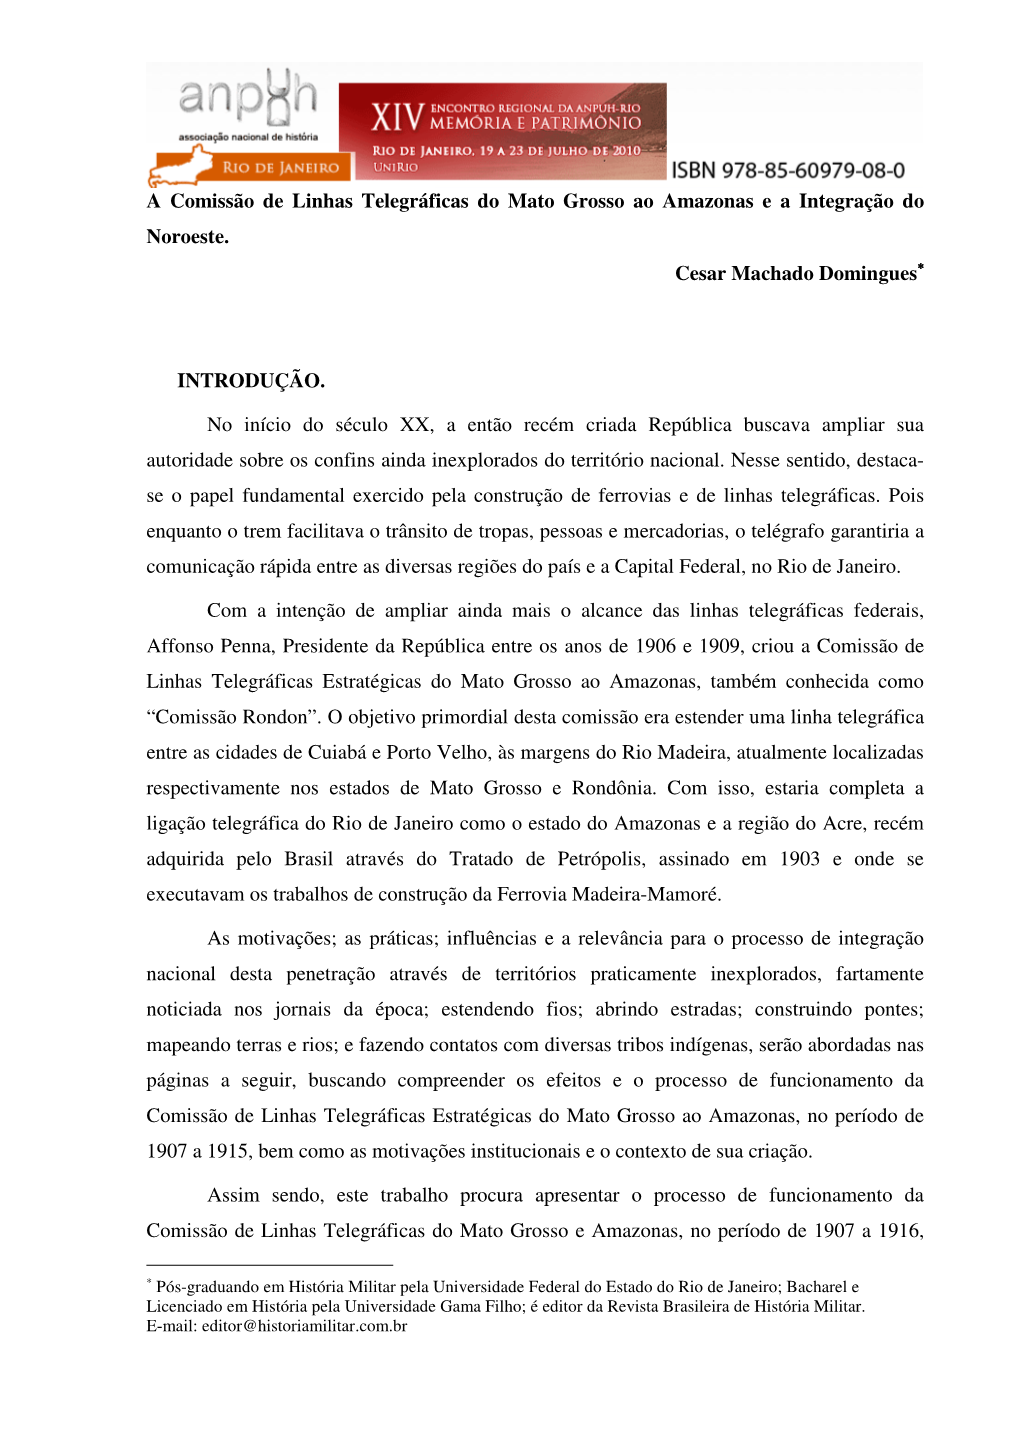 A Comissão De Linhas Telegráficas Do Mato Grosso Ao Amazonas E a Integração Do Noroeste